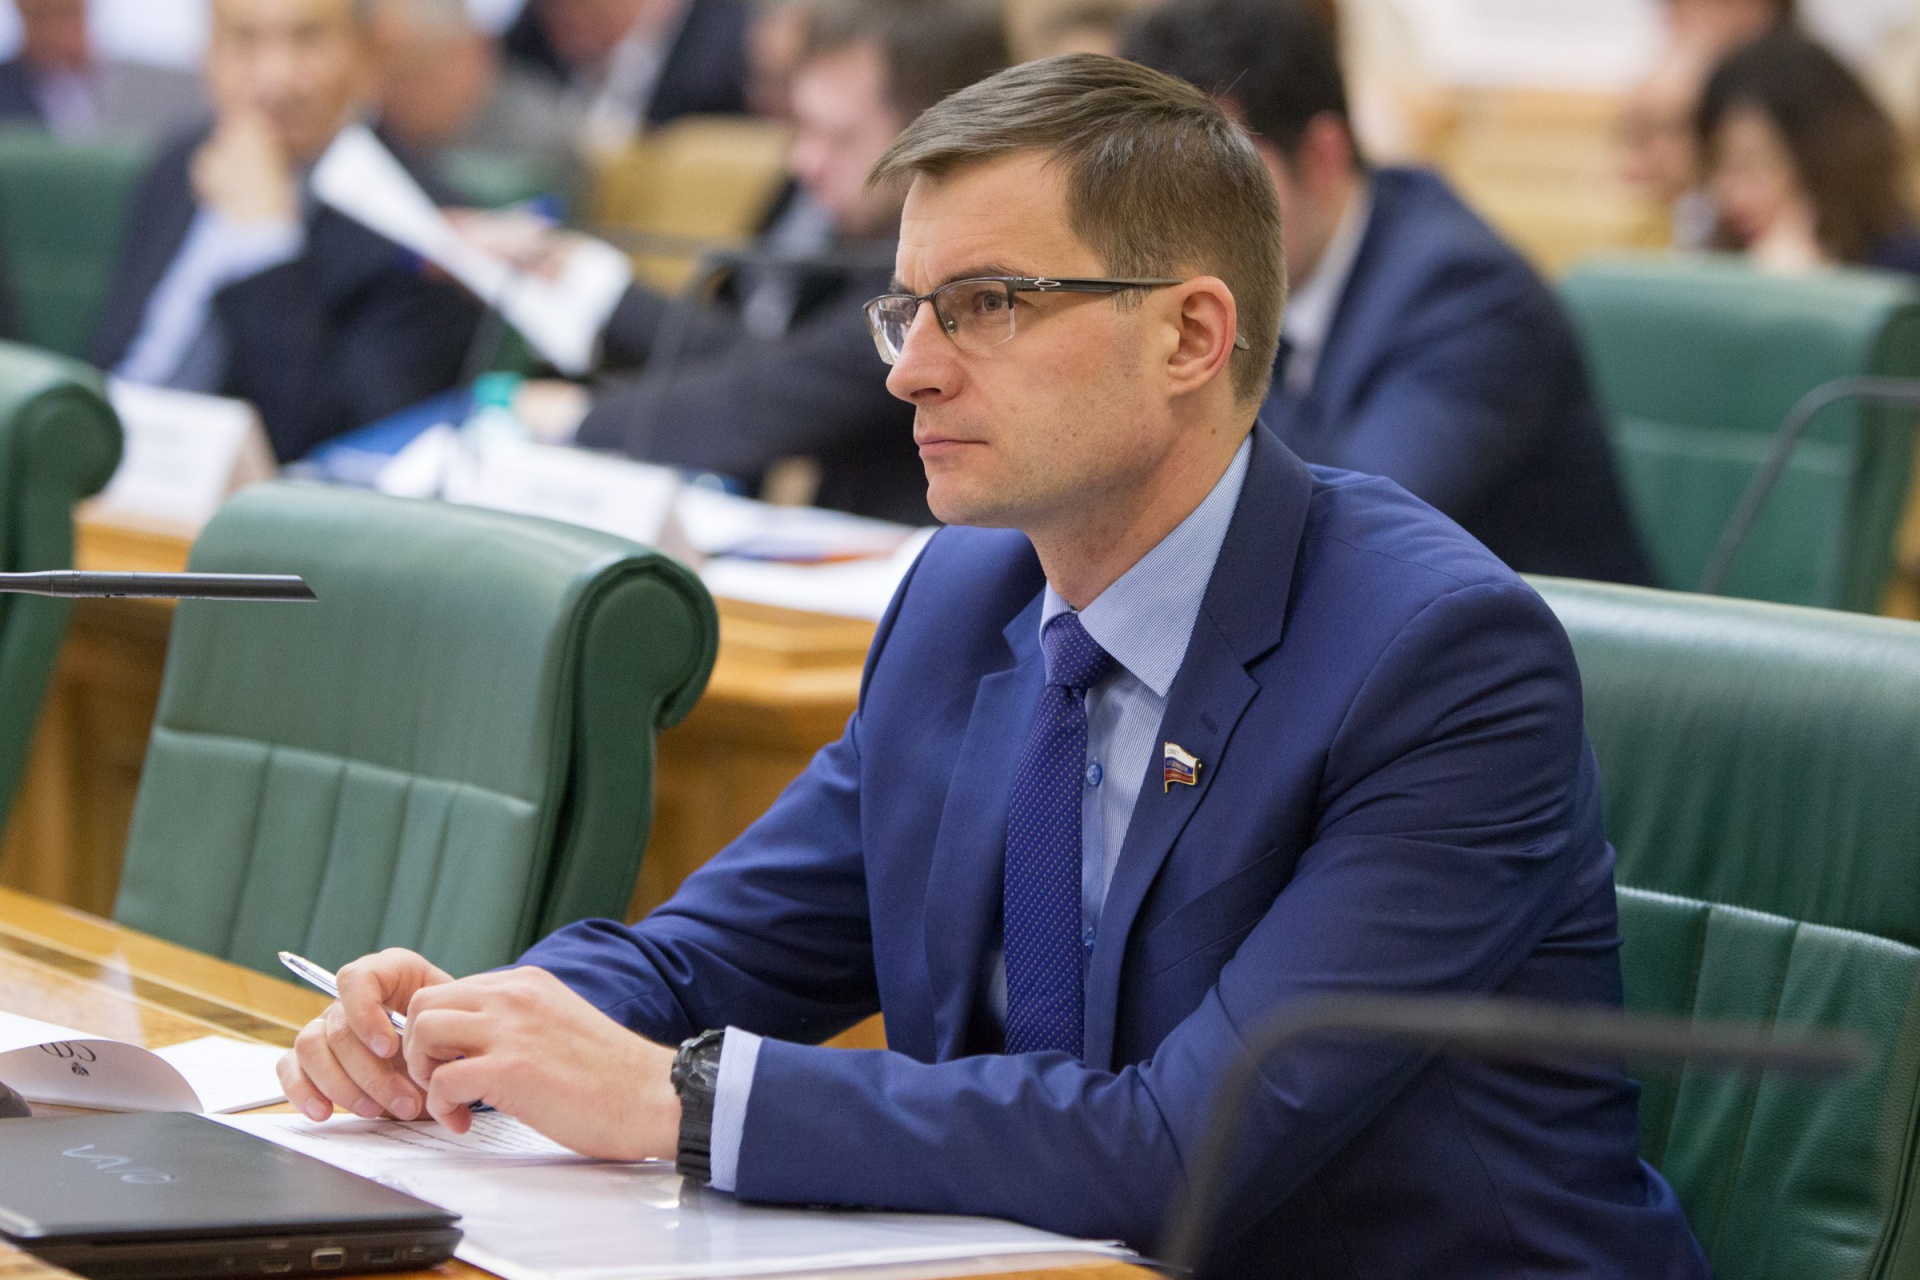 Закон о повышении МРОТ не должен навредить северным регионам -  Дмитрий Шатохин

